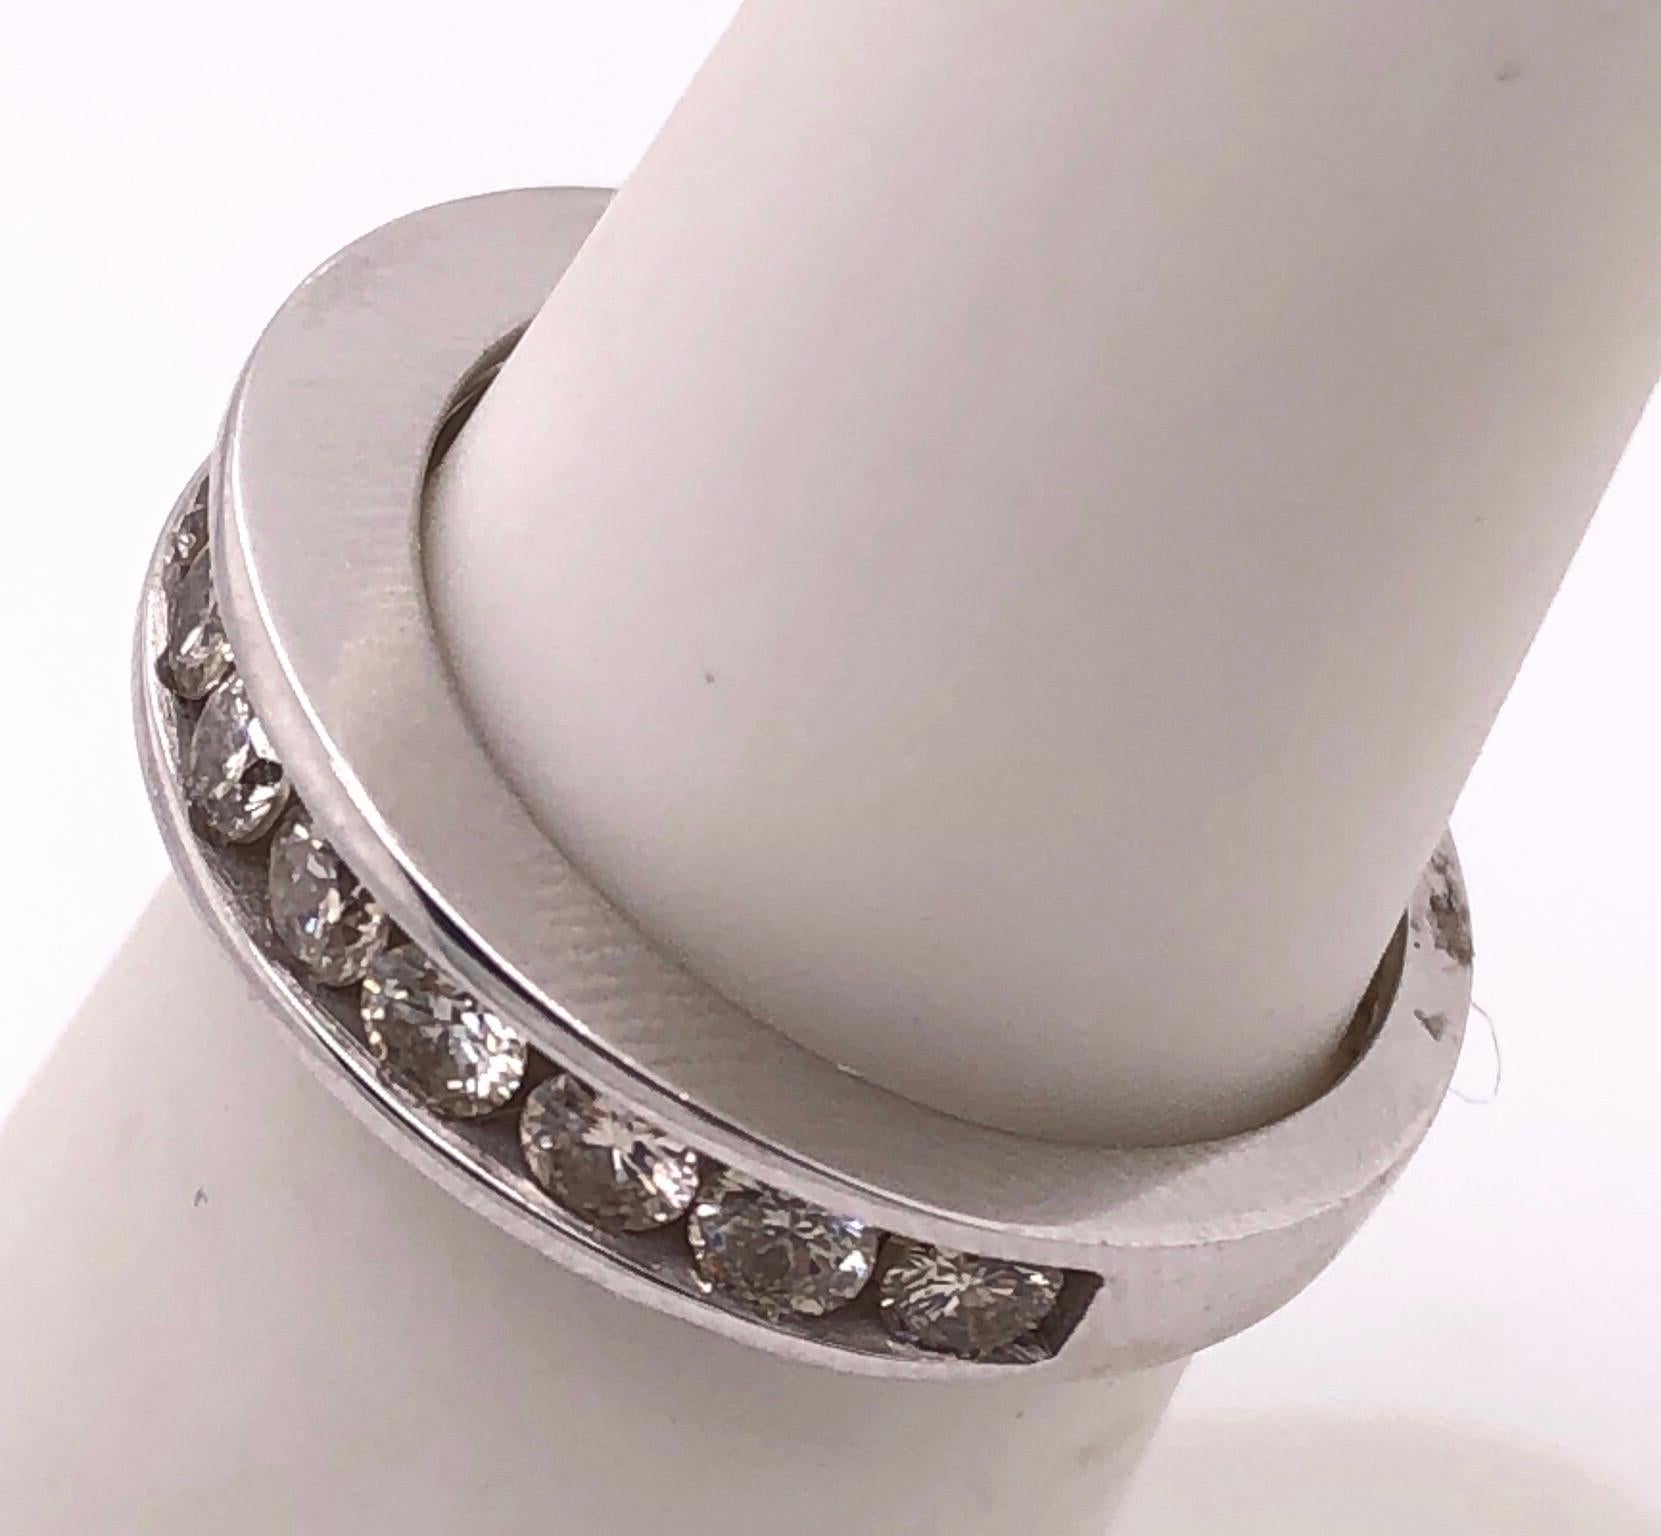 bracelet/bague de mariage en or blanc 14 carats avec diamants d'un poids total de 1,20.
Taille 5
3.poids total de 48 grammes.